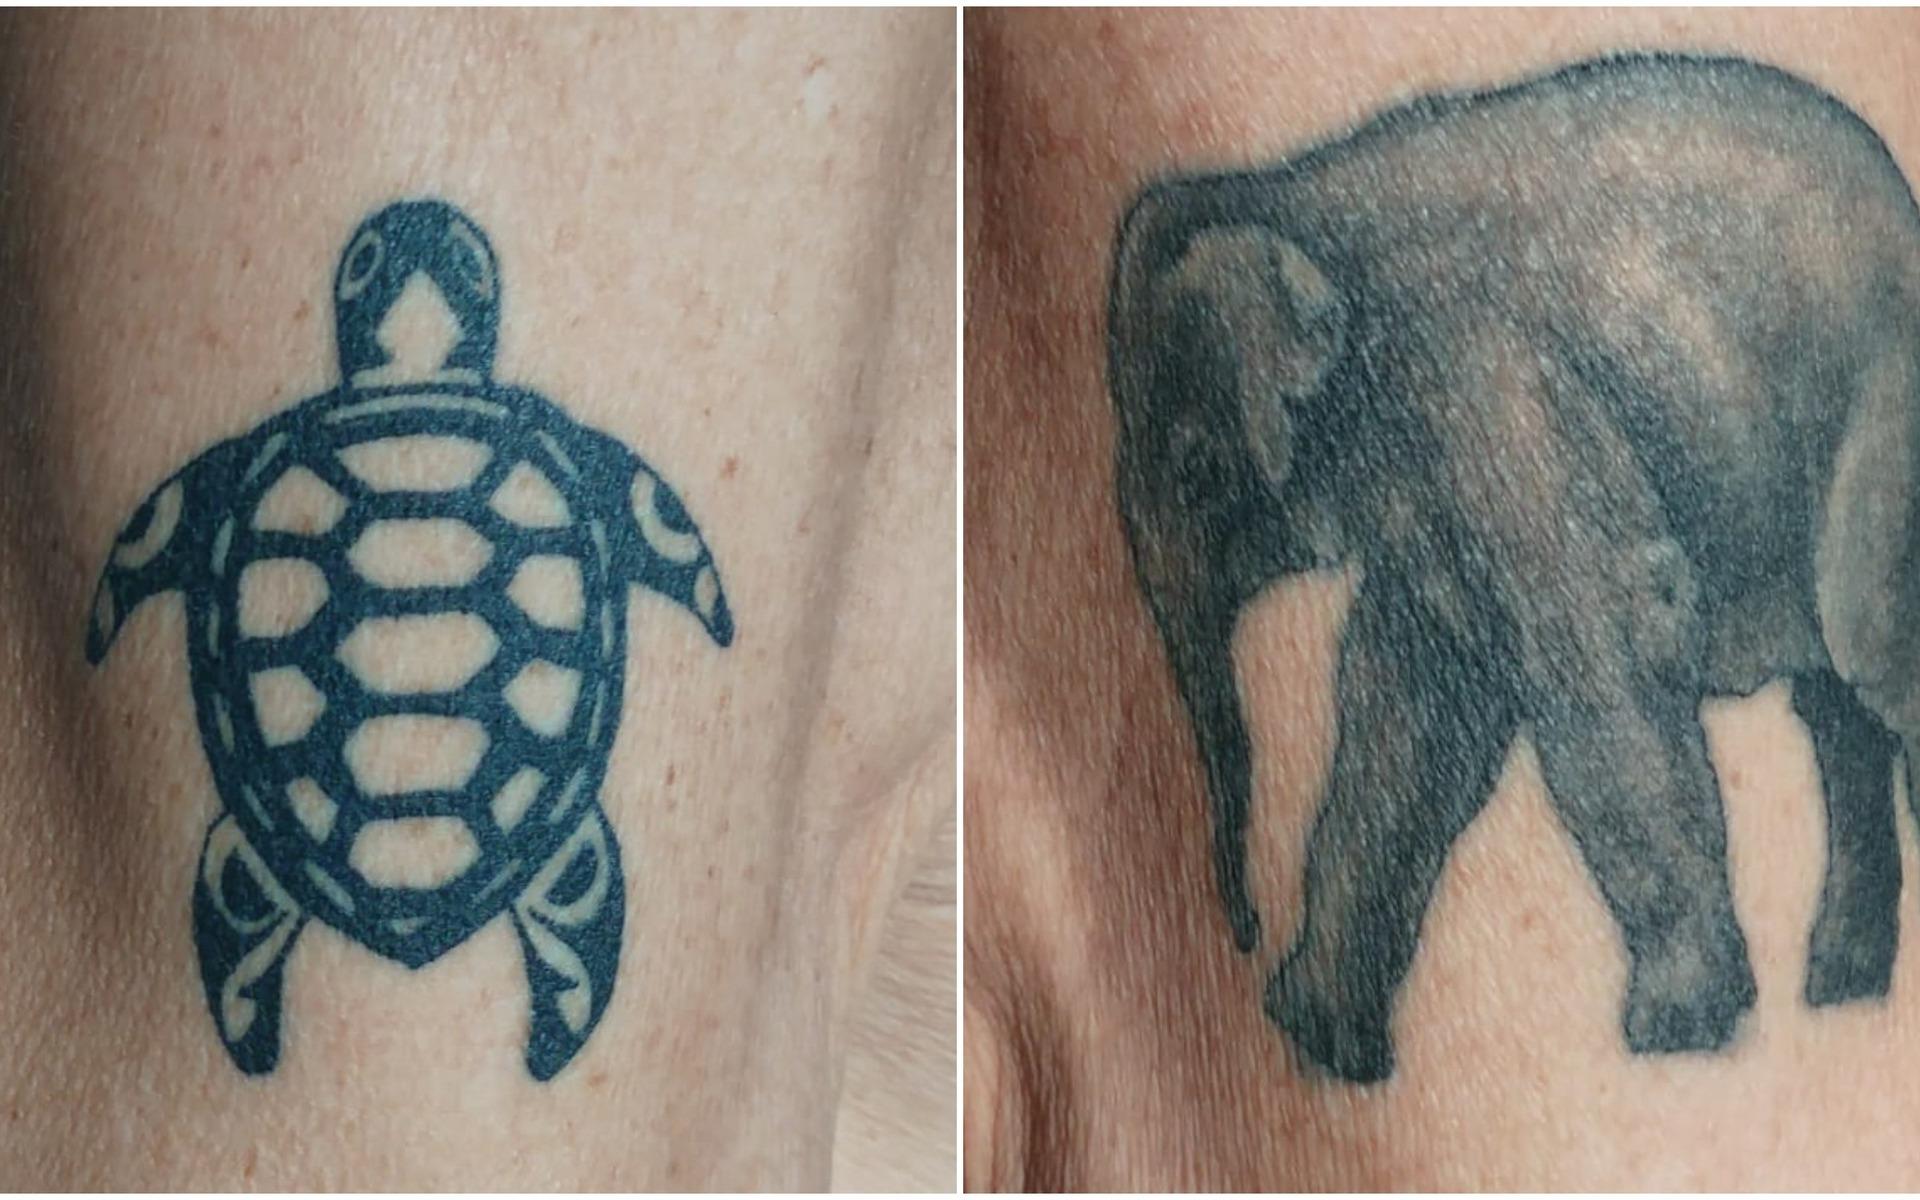 Per Lindahl har hämtat inspiration till sina tatueringar från utrotningshotade djur. ”Inspiration till elefanten fick jag vid besök i Indien och sköldpaddan såg jag på ett rehabiliteringscenter för sköldpaddor på Cuba”, skriver han.